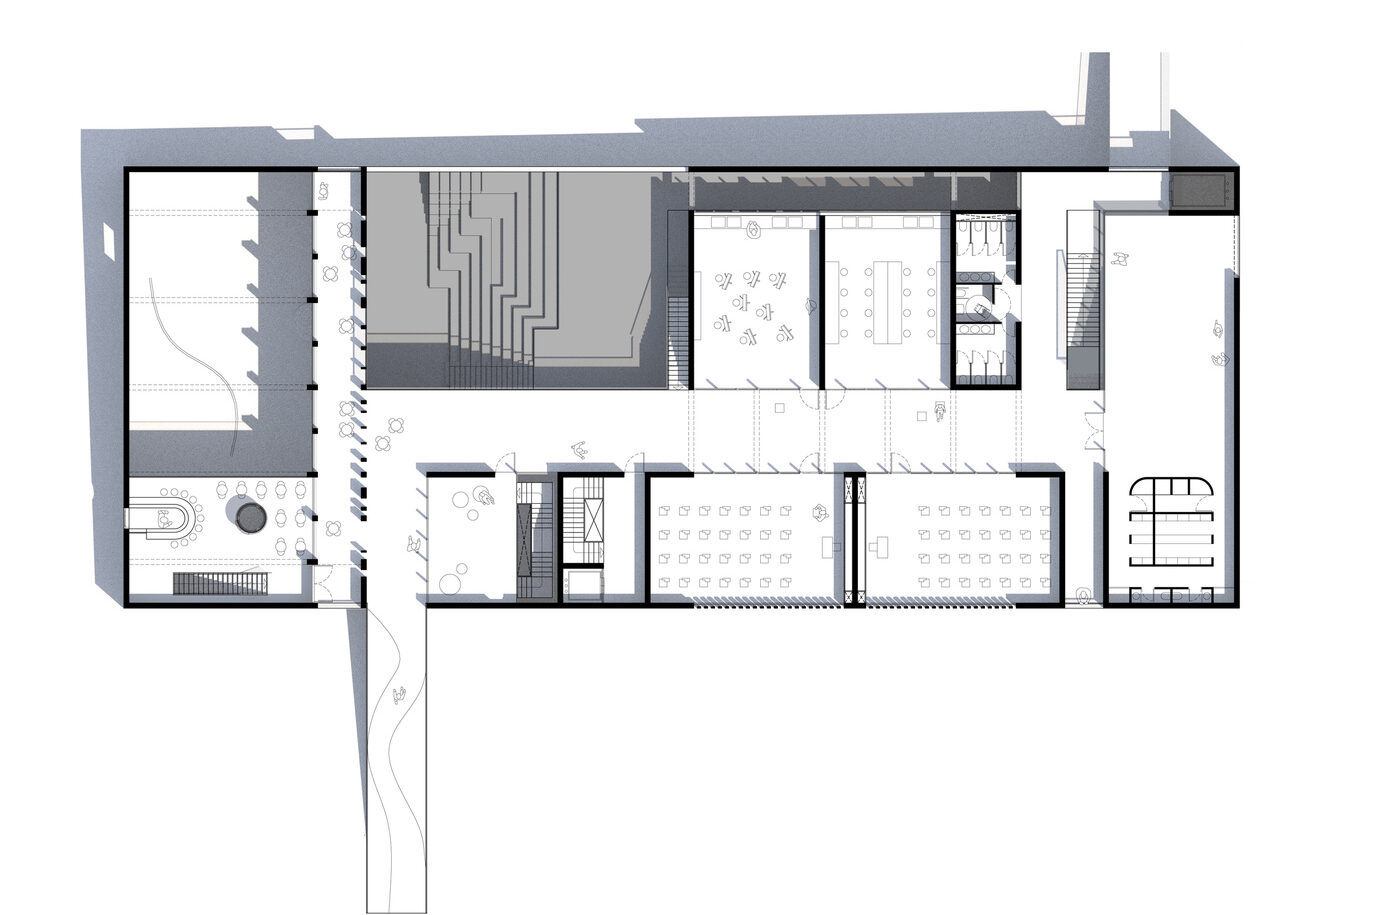 Archisearch H πρόταση του γραφείου Plaini and Karahalios Architects για το νέο κτίριο τεχνών Δ. Δασκαλόπουλος του Κολλεγίου Αθηνών